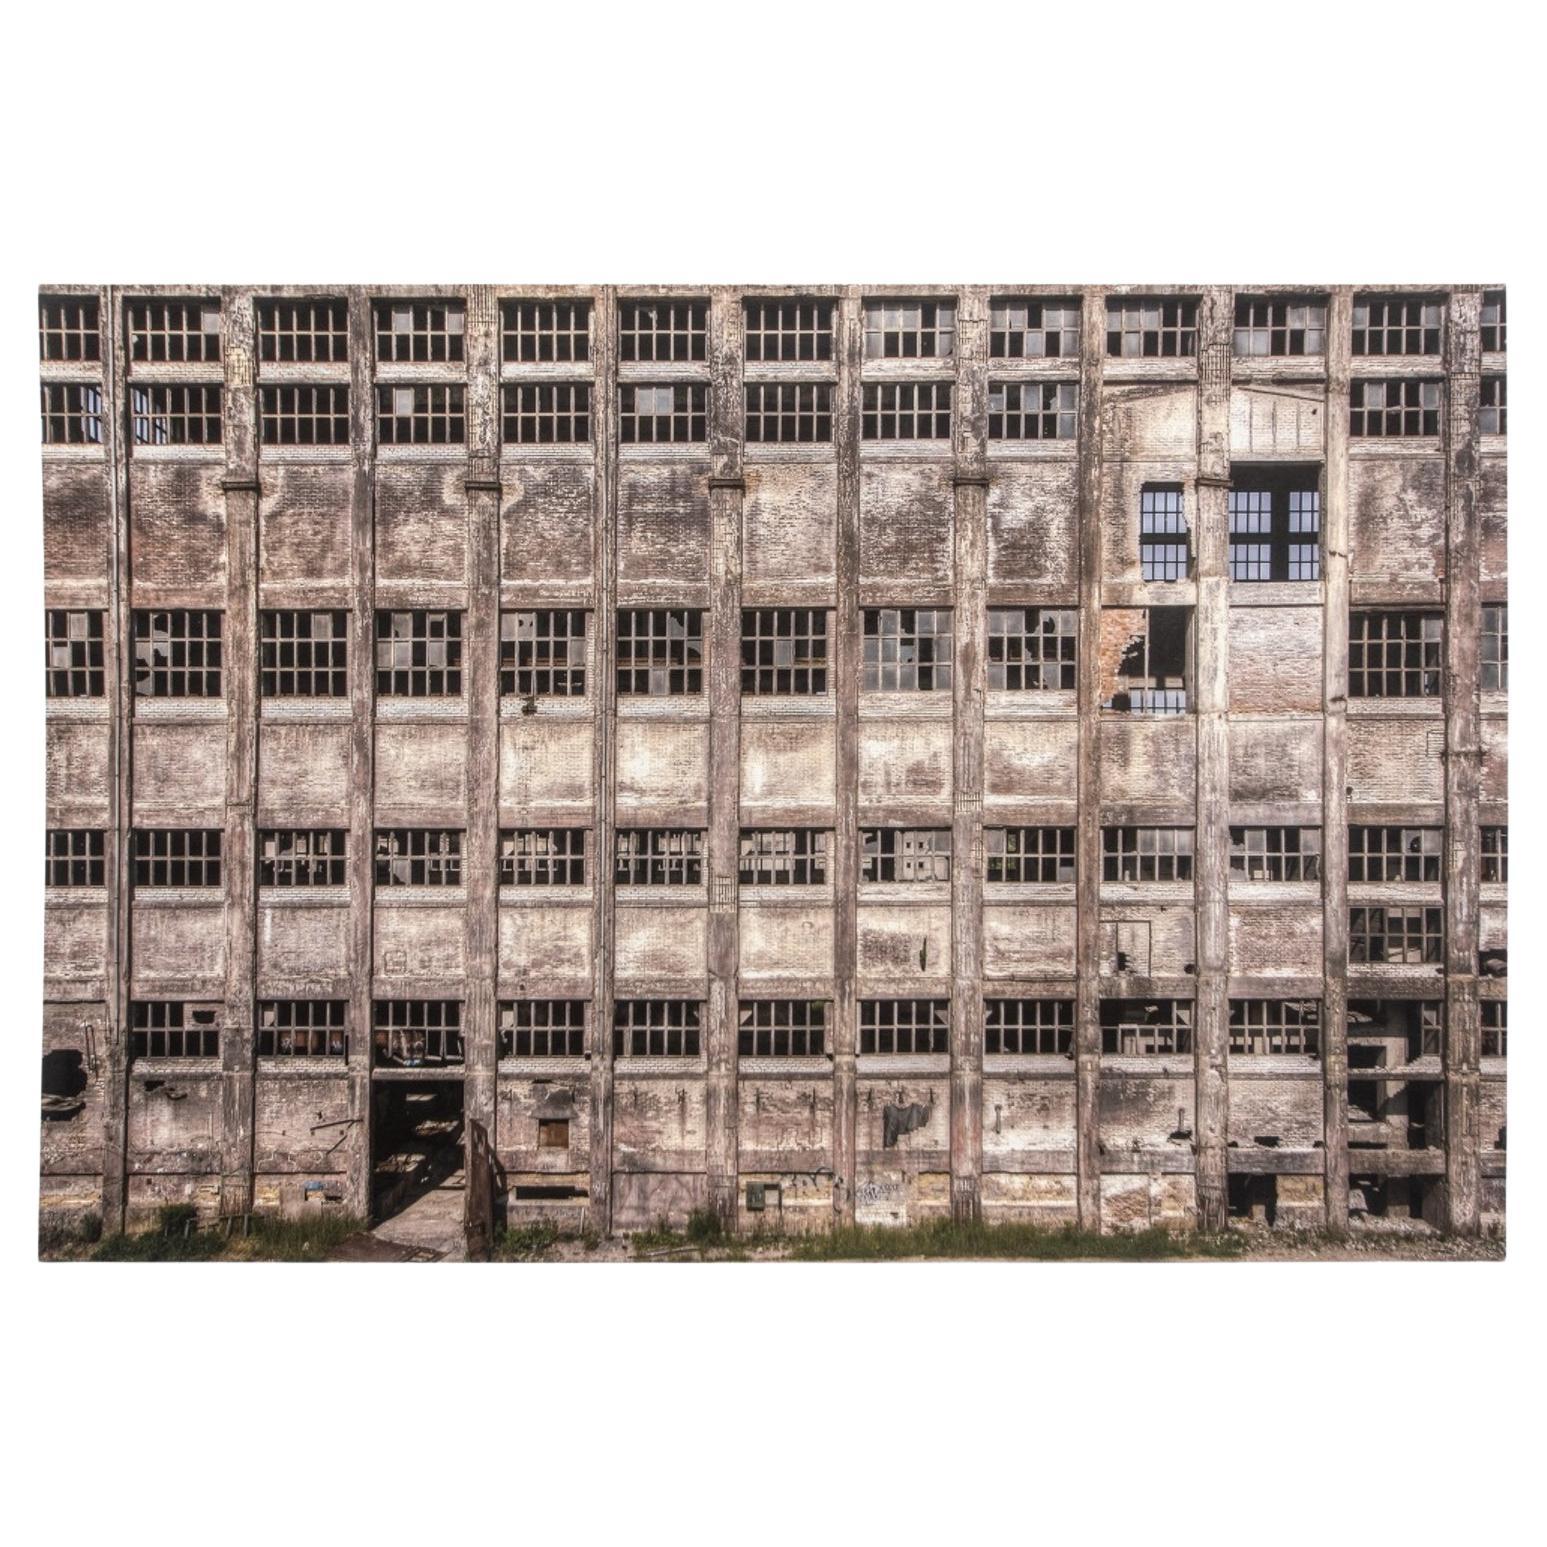 Ciborowski "Mondrian's Facade" Digital Print, 2014